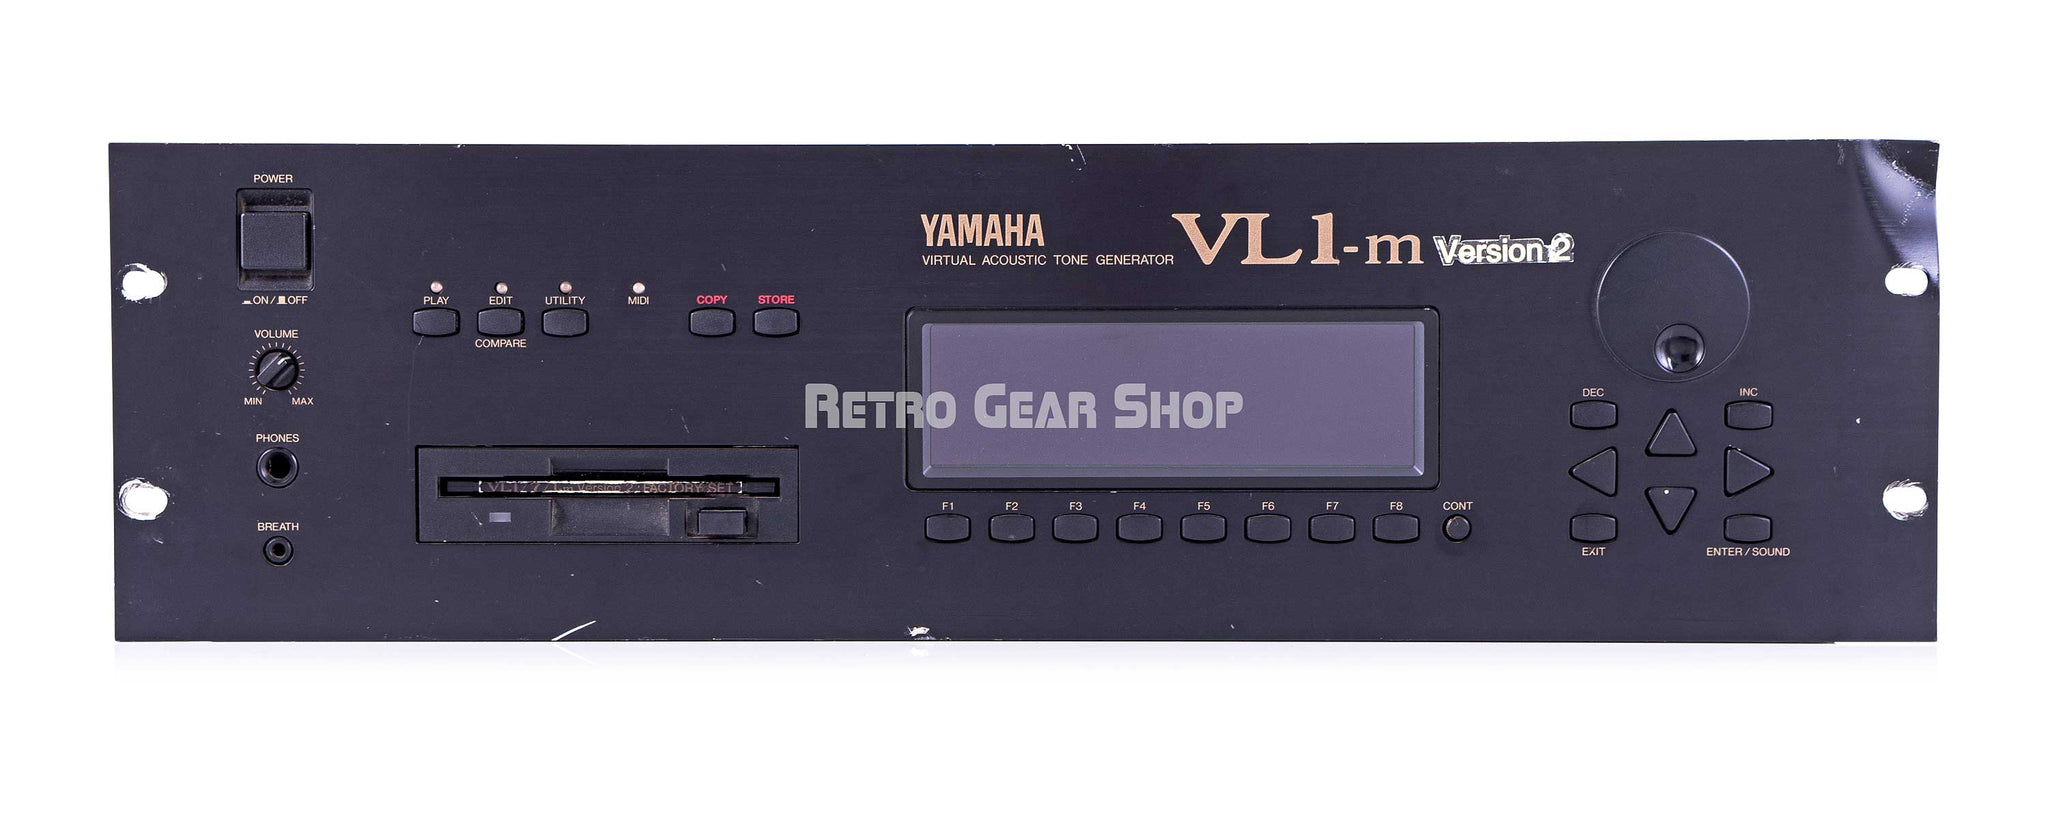 正規新品YAMAHA/ヤマハ VL1-m Version2 VA(バーチャルアコースティック)音源 音源モジュール 音源モジュール